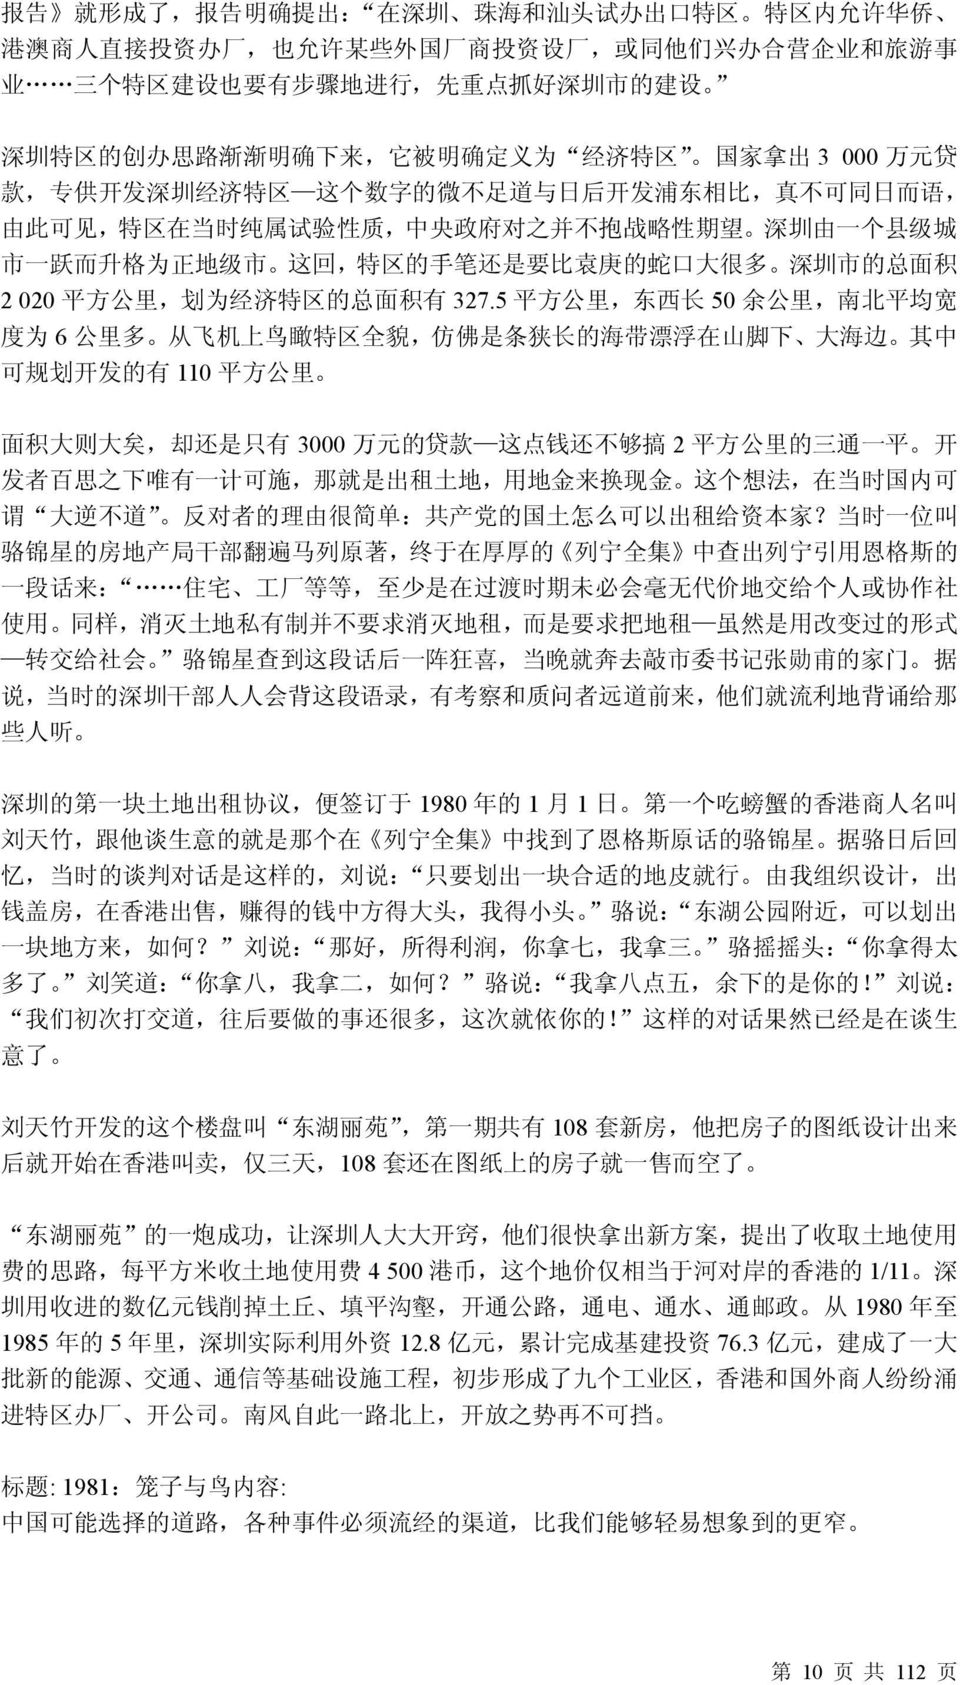 性 期 望 深 圳 由 一 个 县 级 城 市 一 跃 而 升 格 为 正 地 级 市 这 回, 特 区 的 手 笔 还 是 要 比 袁 庚 的 蛇 口 大 很 多 深 圳 市 的 总 面 积 2 020 平 方 公 里, 划 为 经 济 特 区 的 总 面 积 有 327.